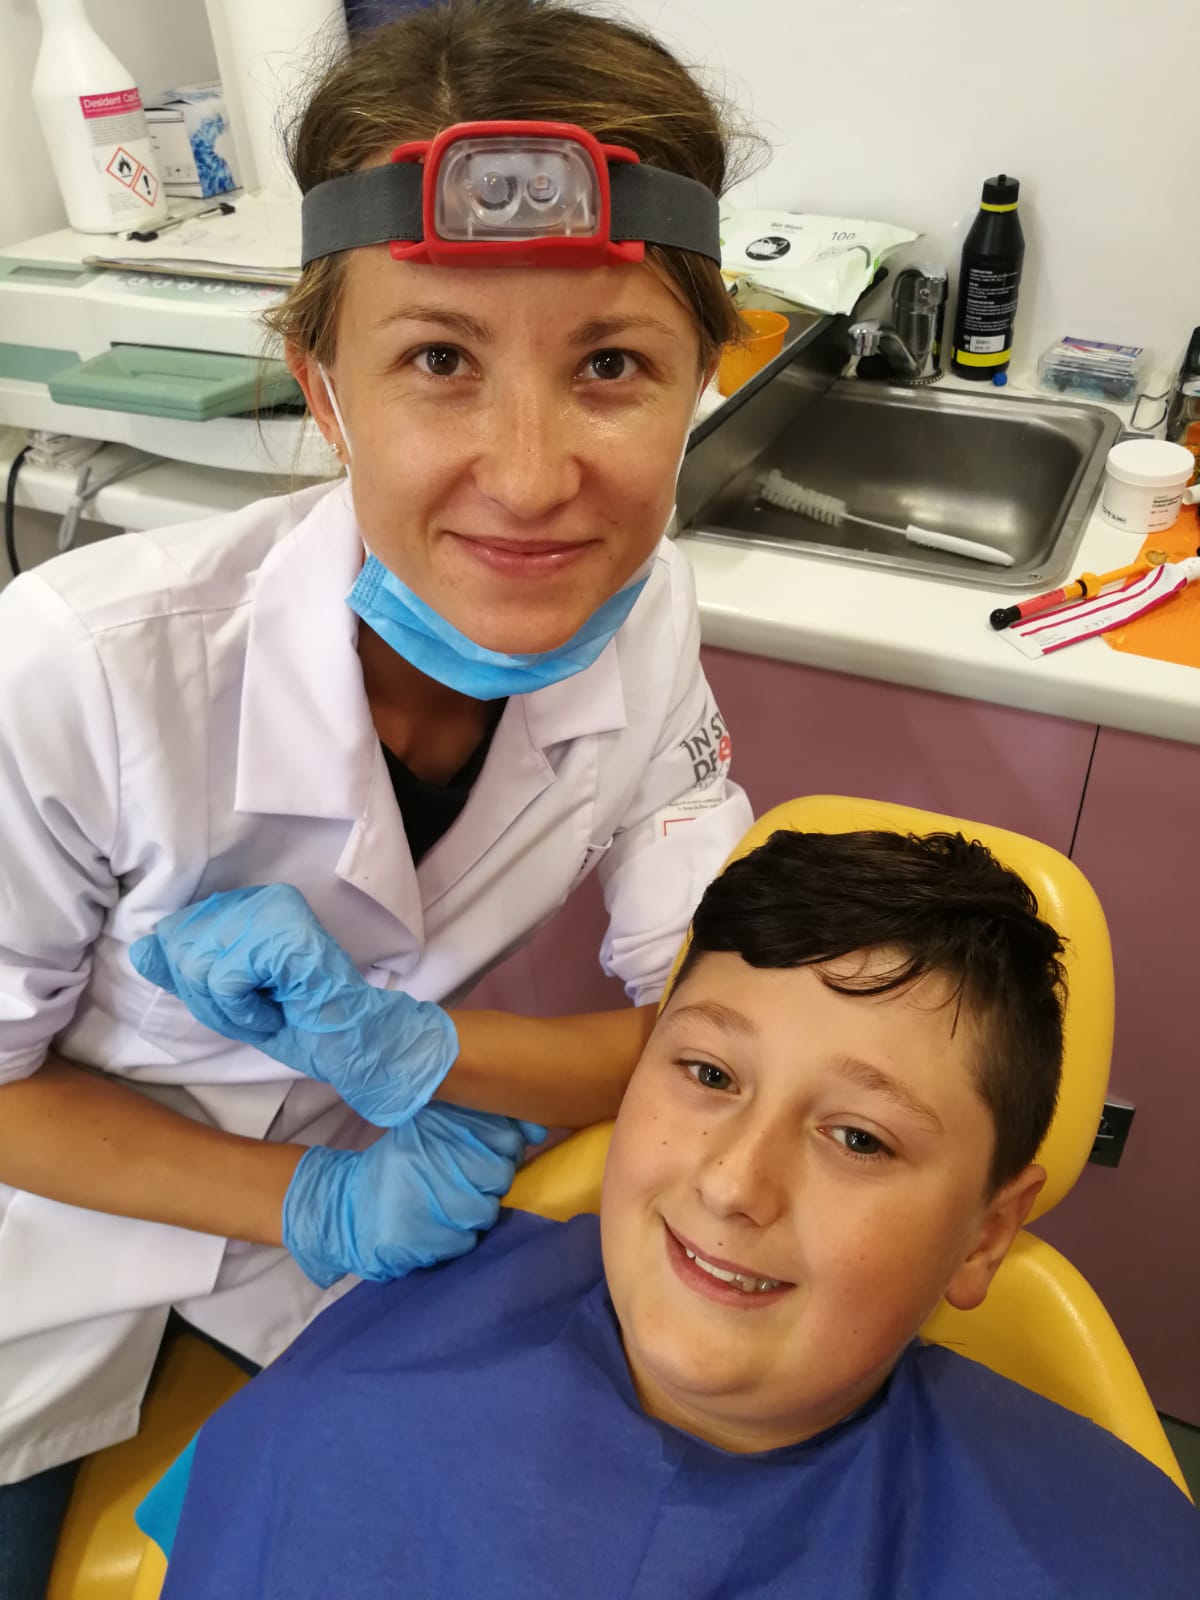 129 de copii din comuna Topolog, satele Topolog, Sâmbăta Nouă, Cerbu, Făgărașu Nou și Calfa au beneficiat de prevenție și tratament stomatologic gratuit